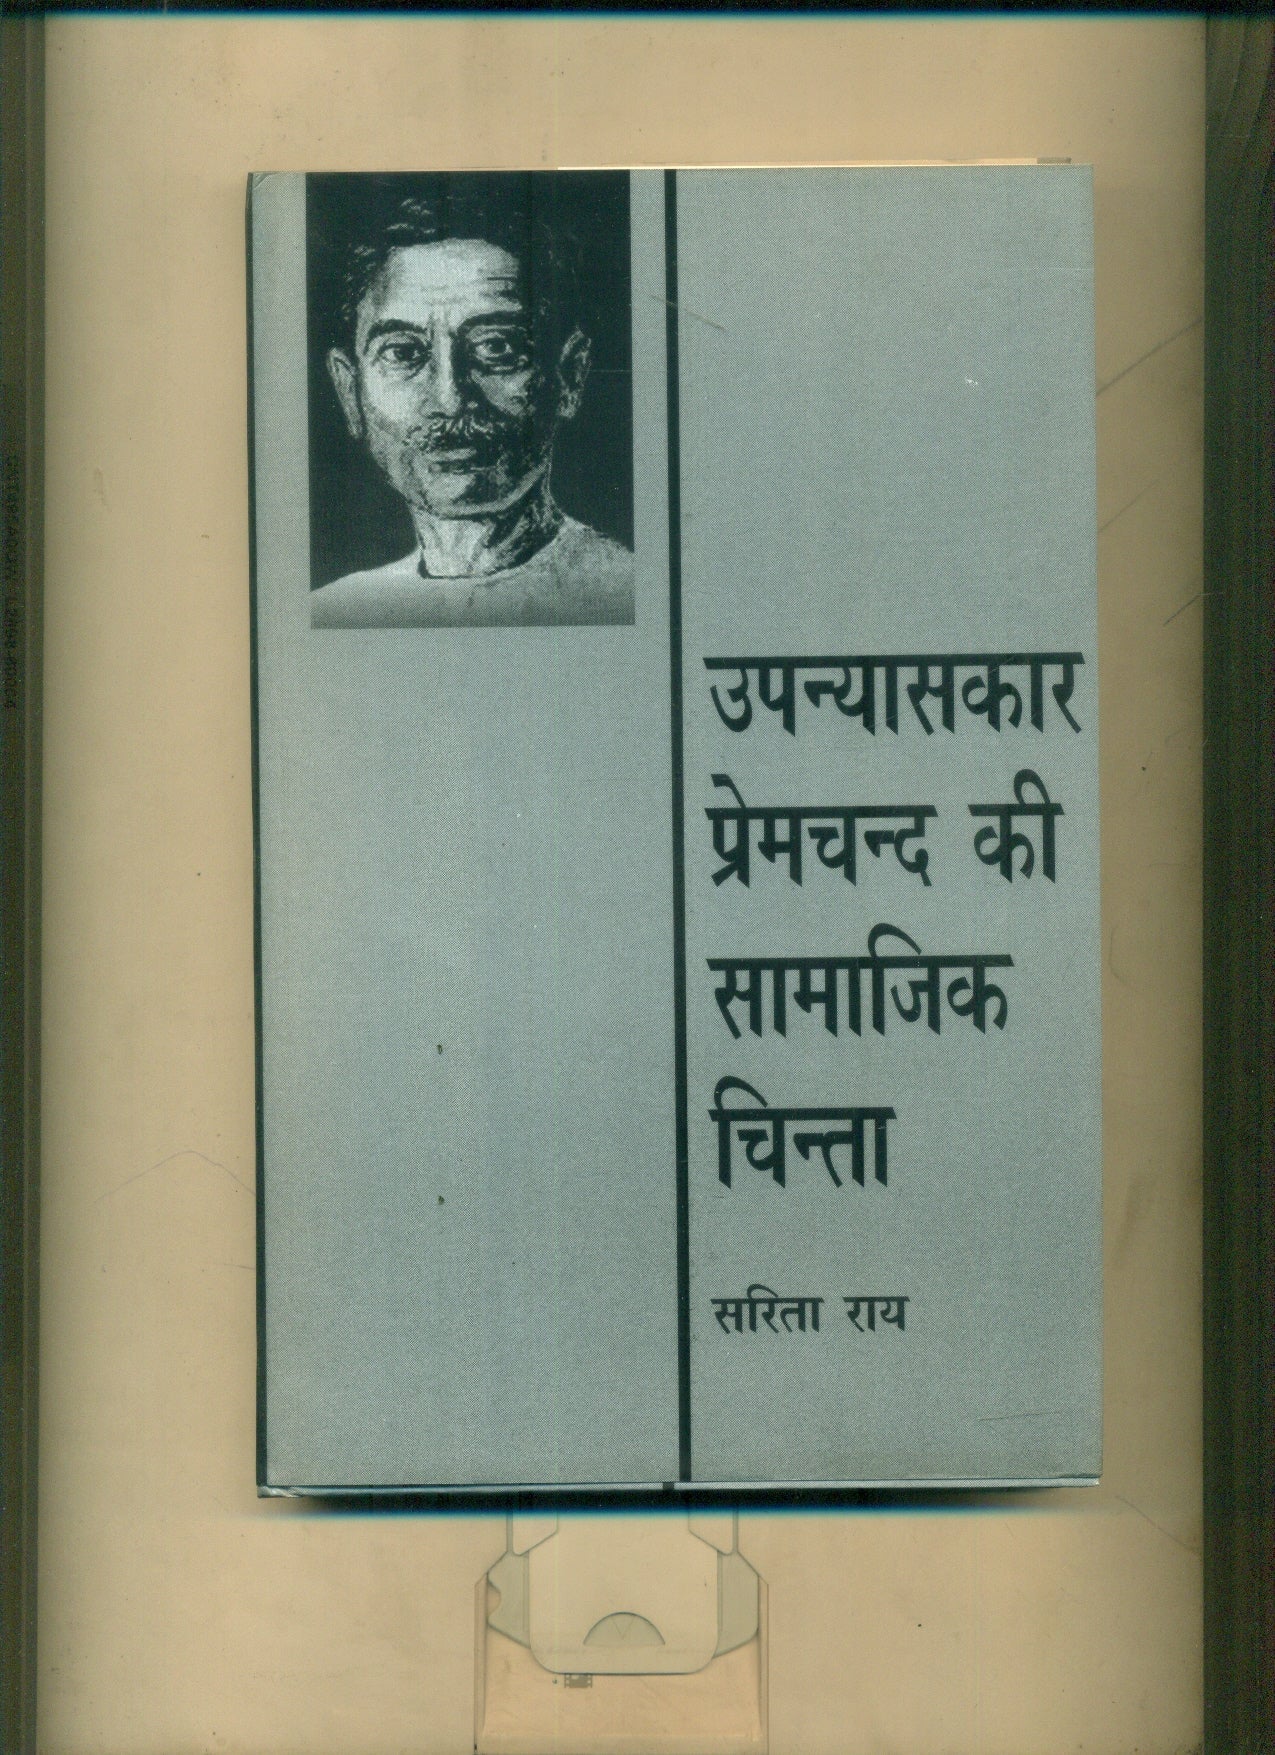 Upanyaskar Premchand Ki Samajik Chinta